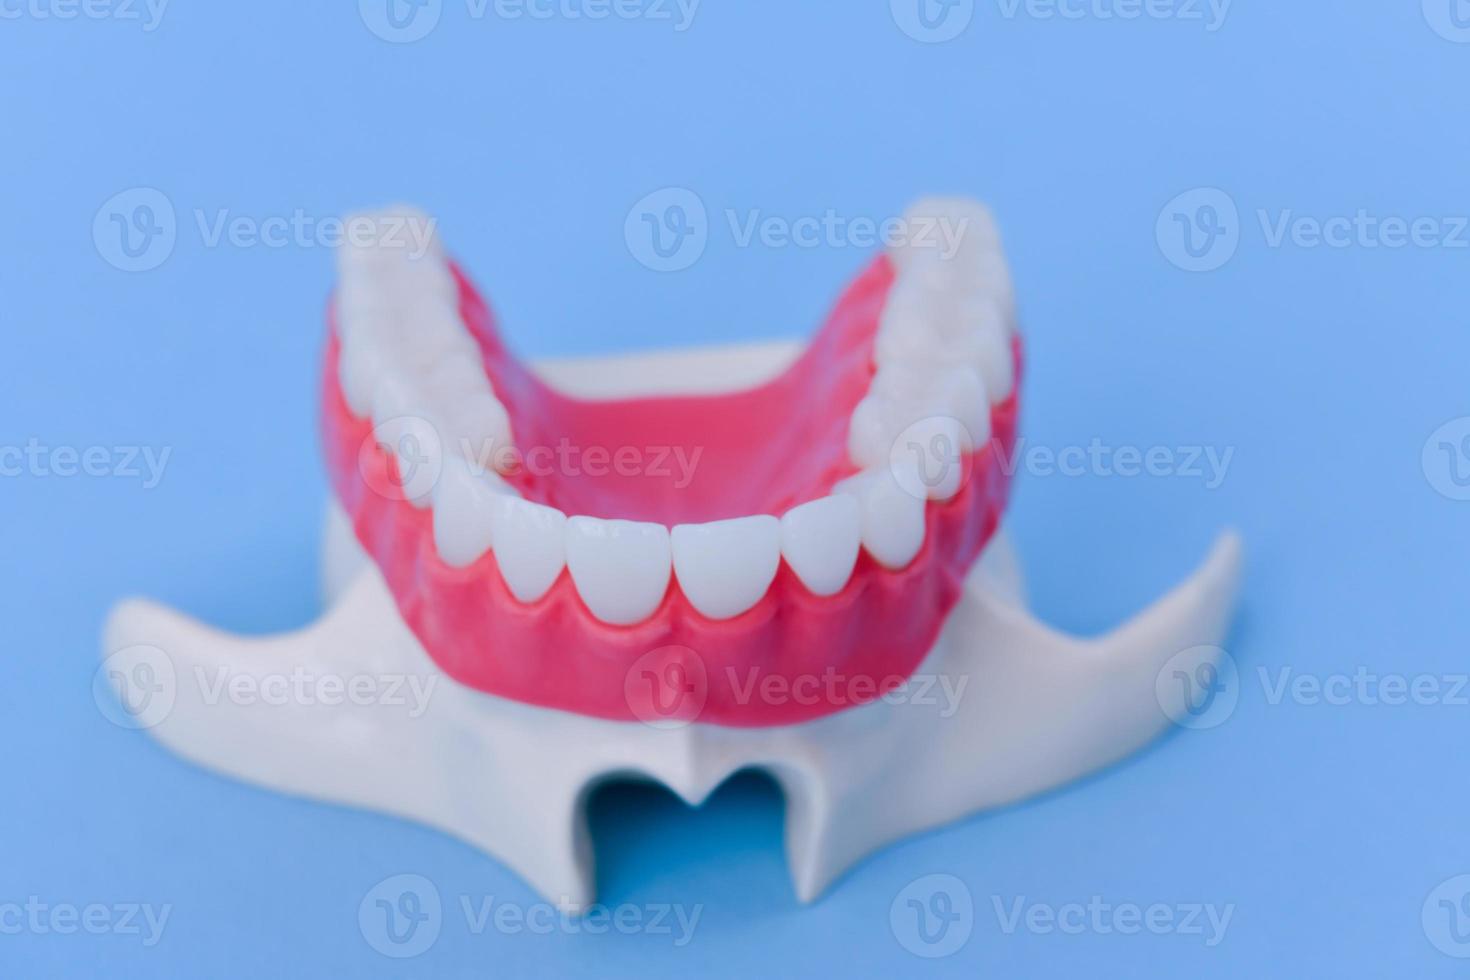 övre mänsklig käke med tänder och tandkött anatomi modell foto